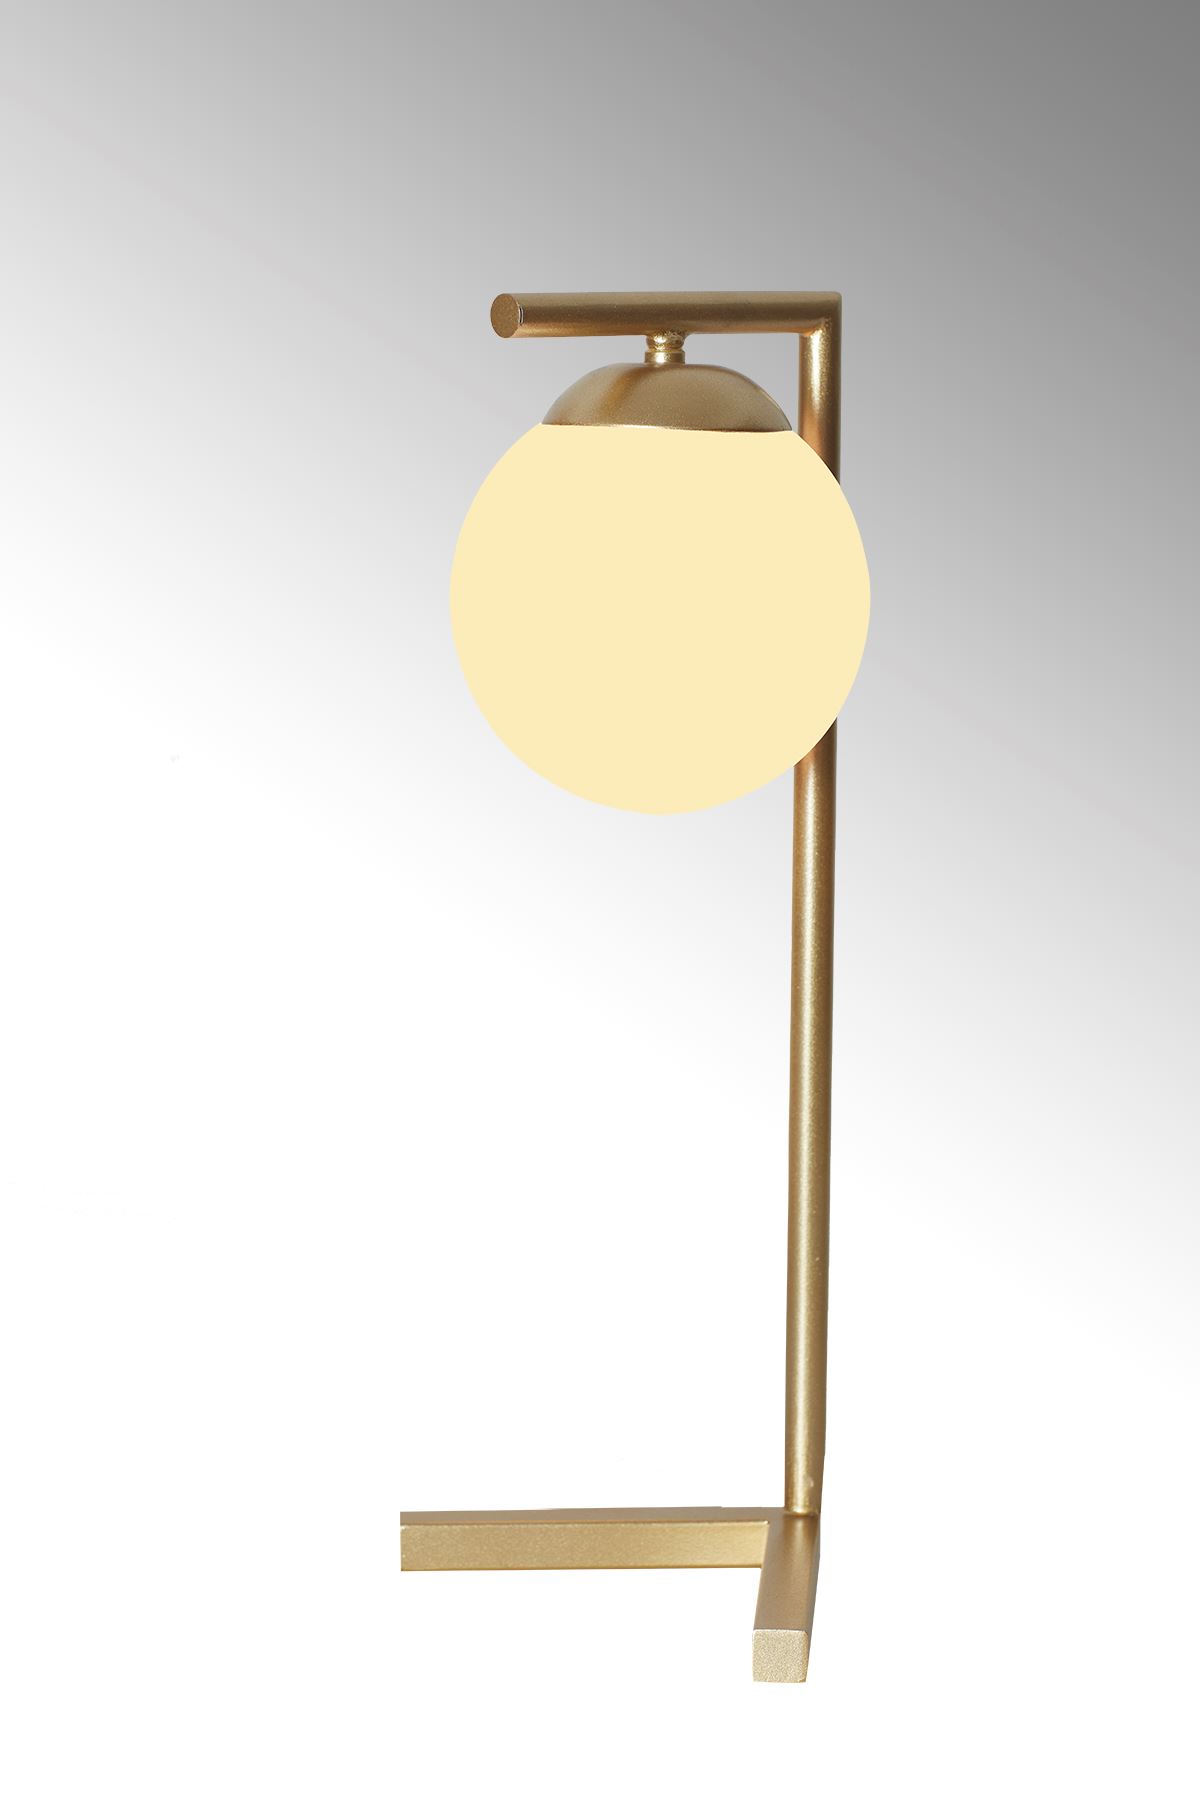 Linda Sarı Metal Gövde Beyaz Camlı Tasarım Lüx Masa Lambası